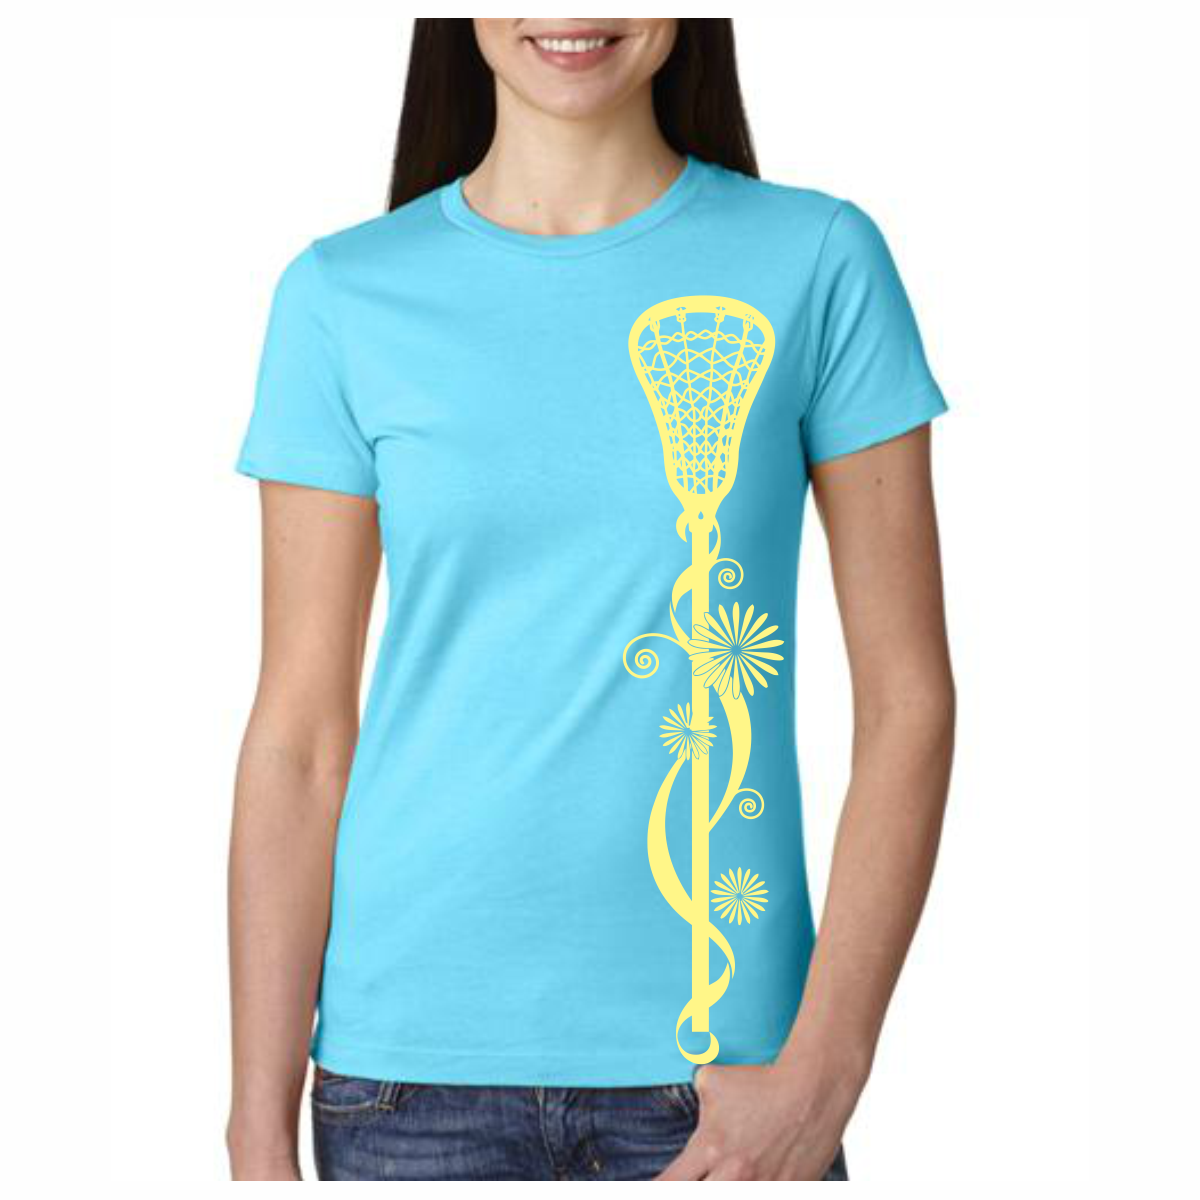 Lacrosse T-Shirt Vertical Lacrosse Stick